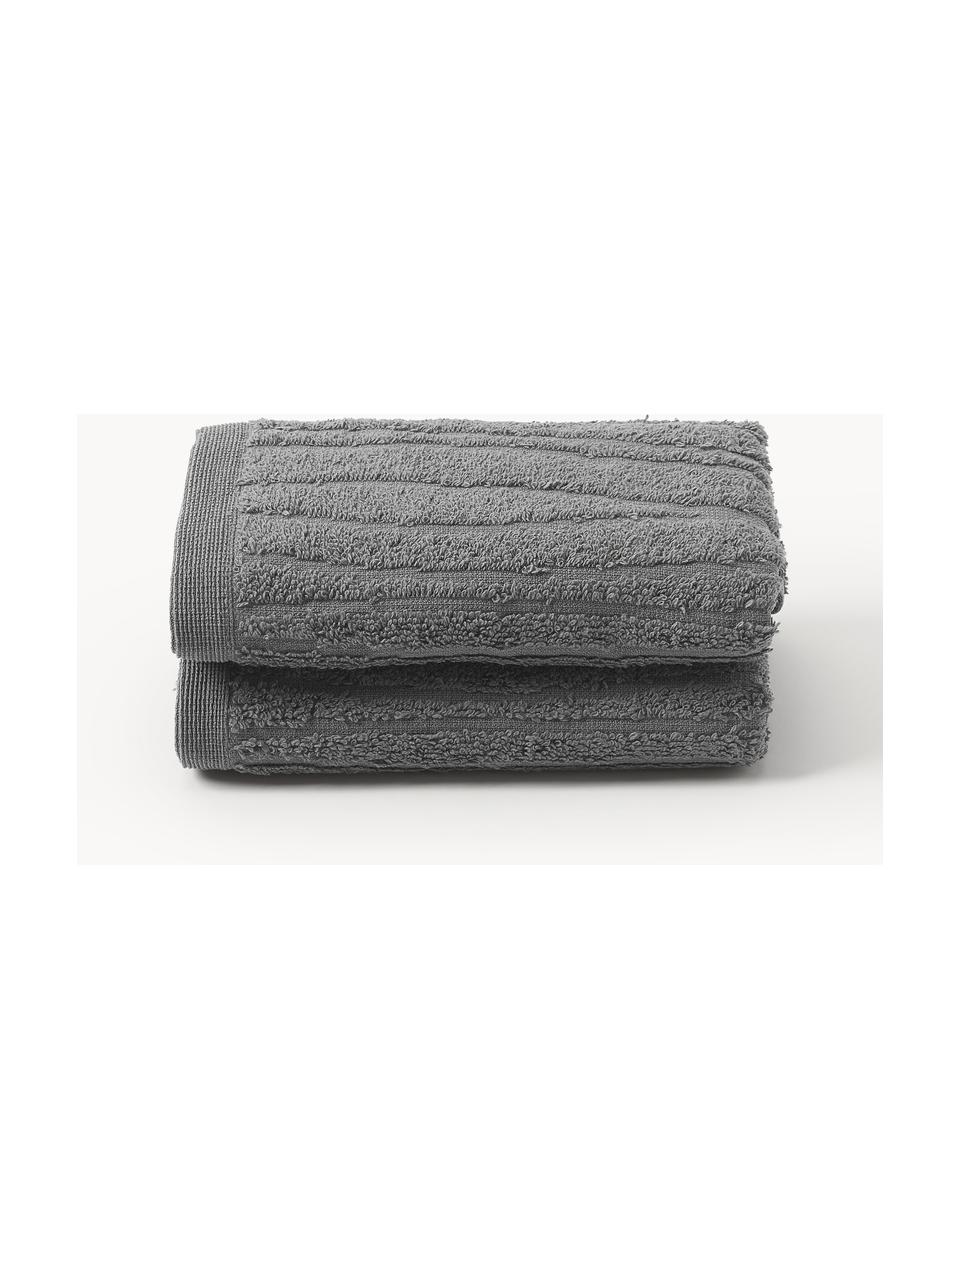 Katoenen handdoek Audrina in verschillende formaten, Donkergrijs, Handdoek, B 50 x L 100 cm, 2 stuks